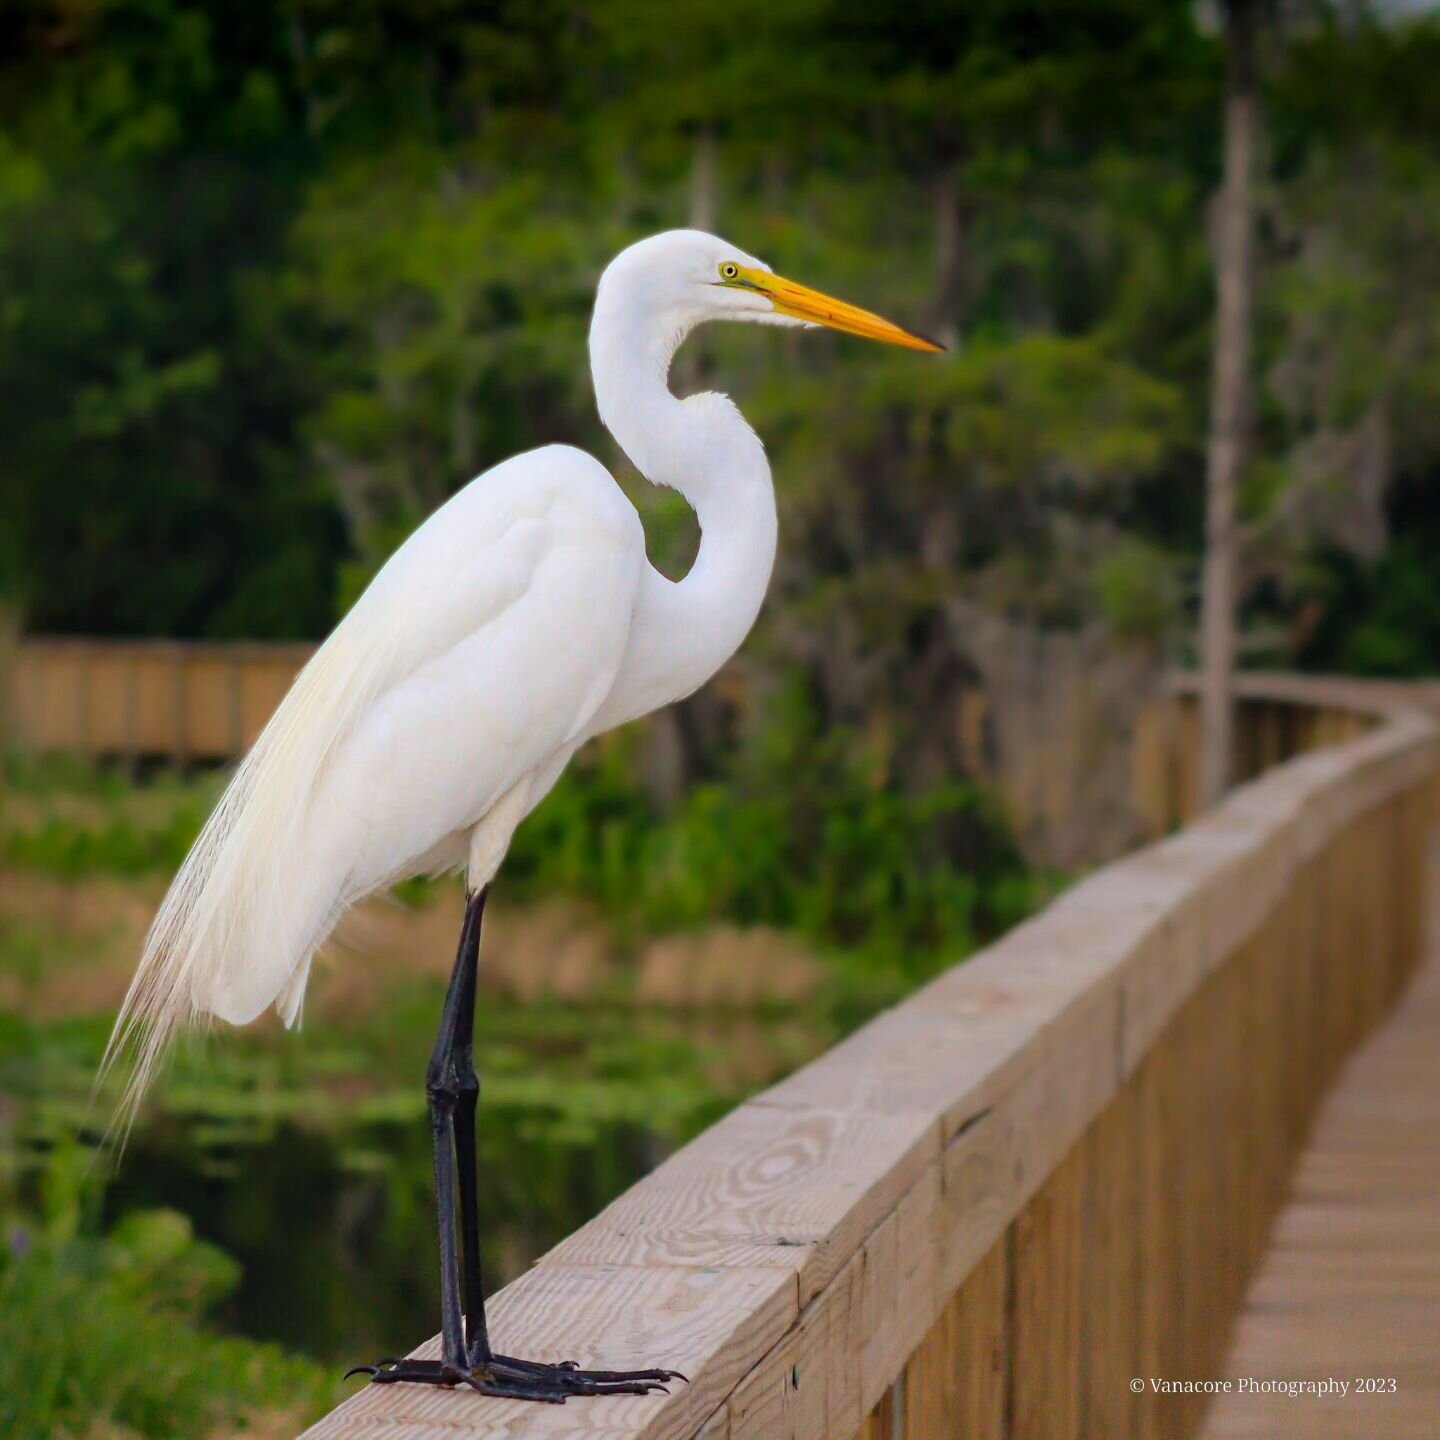 Great Egret on the boardwalk at Orlando Wetlands Park. #florida #christmasflorida #orlandowetlands #orlandowetlandspark #bird #wadingbirds #egret #greategret #birdphotography #wildlifephotography #naturephotography #godcreation #glorytogod